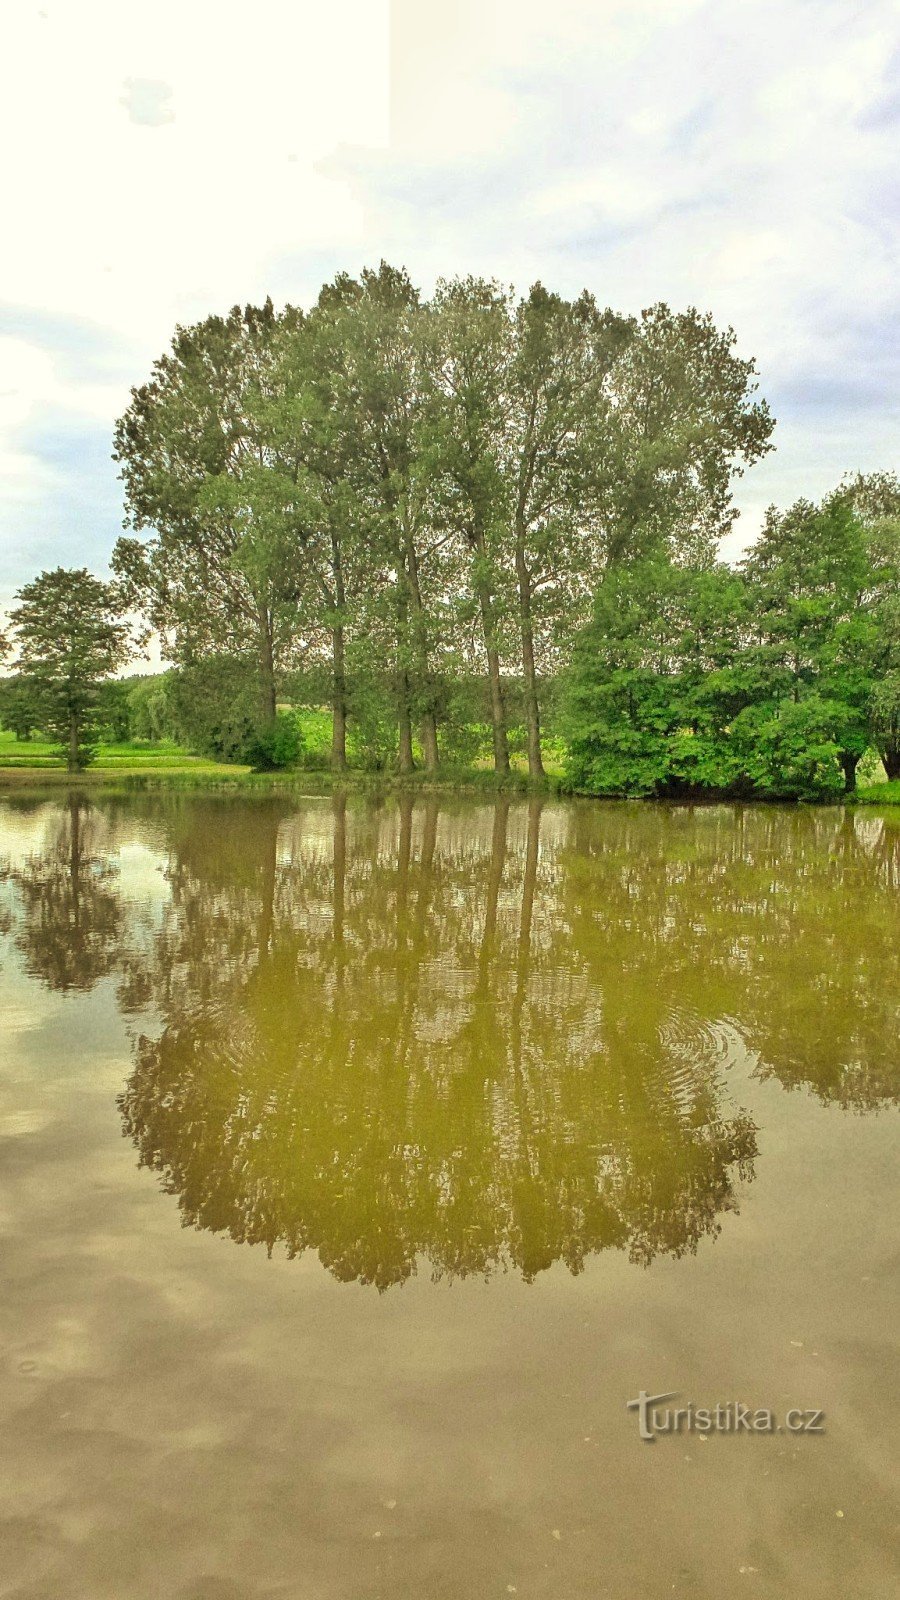 Kozašice的池塘 - 从村庄看